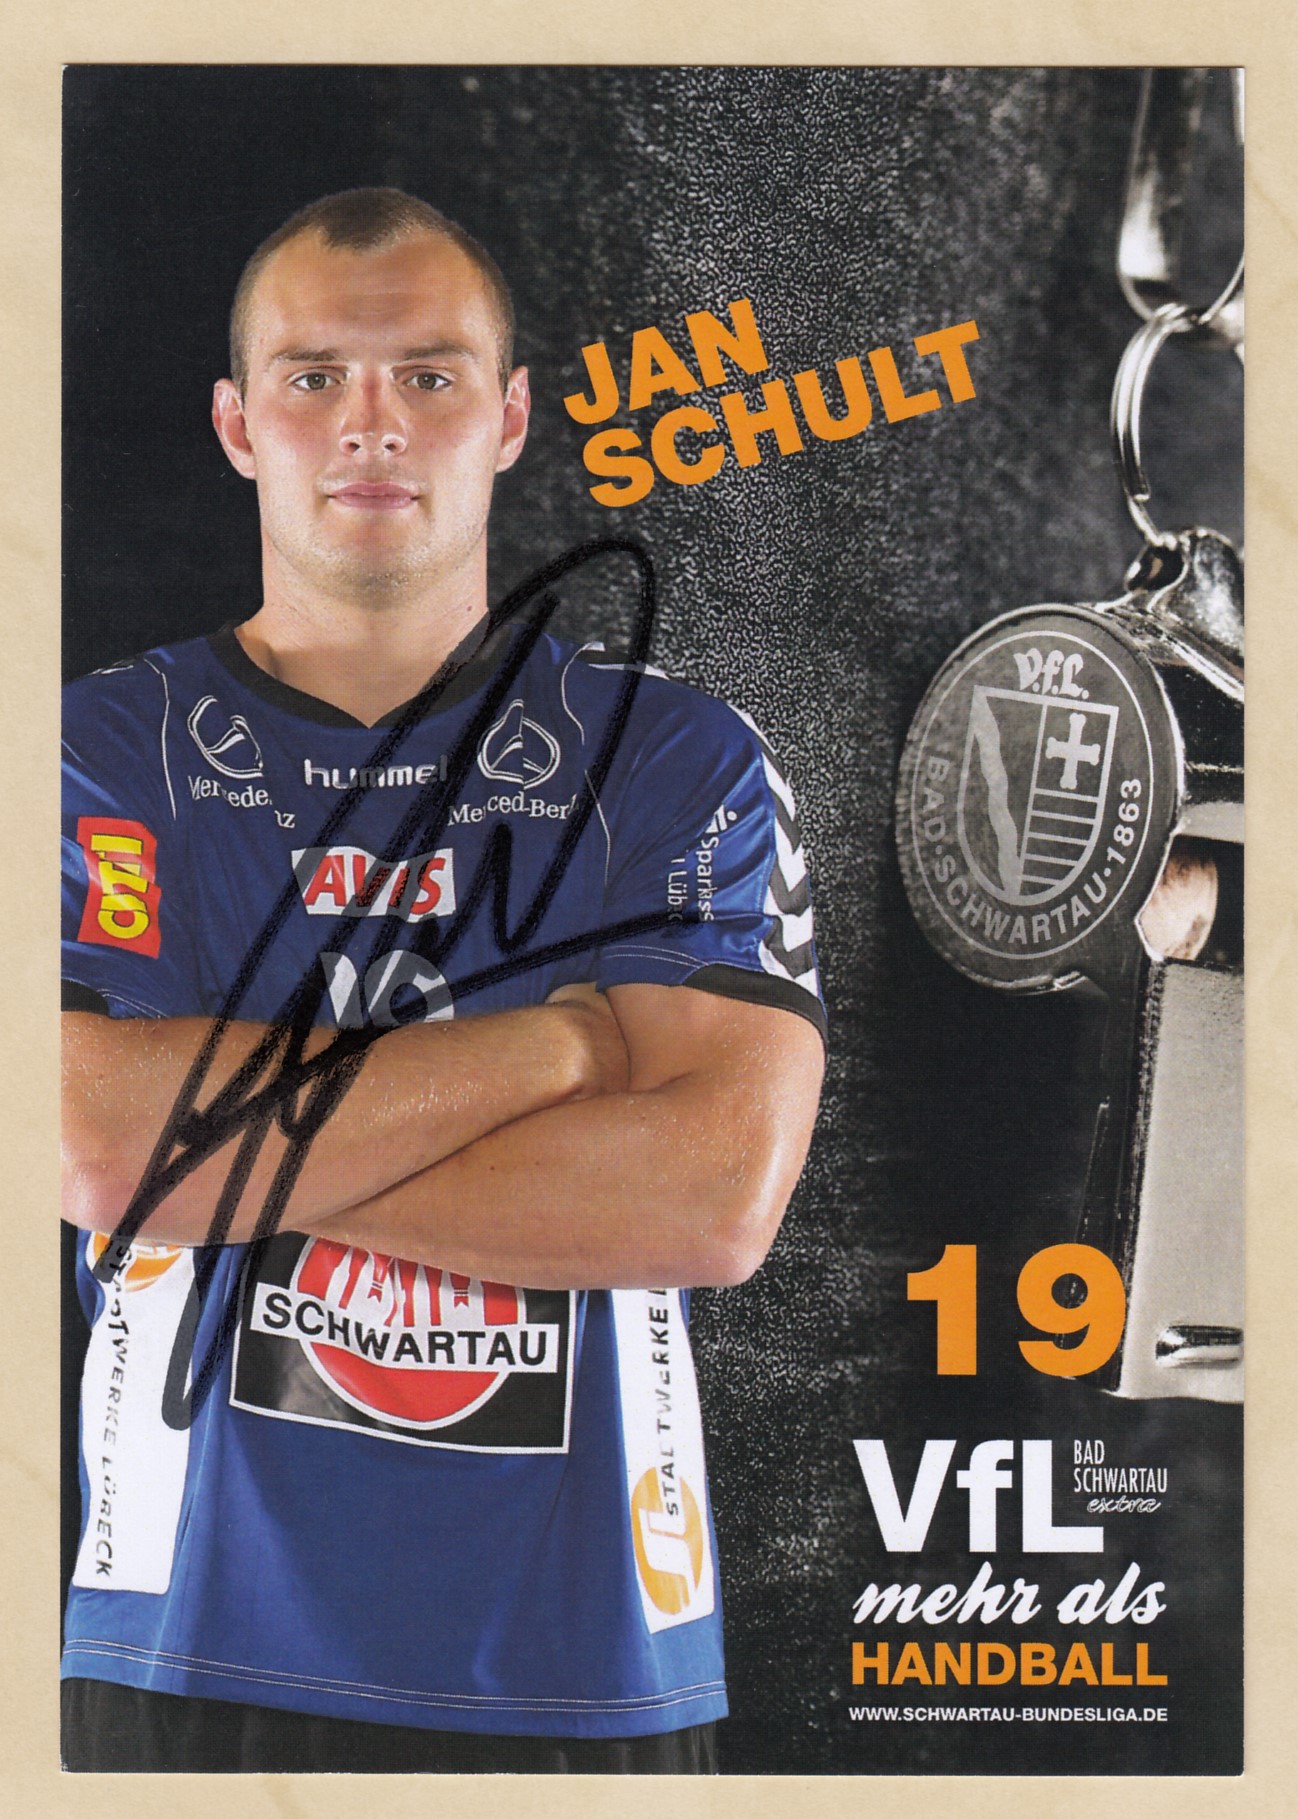 56504 Jan Schult VFL Bad Schwartau Handball original signierte Autogrammkarte 